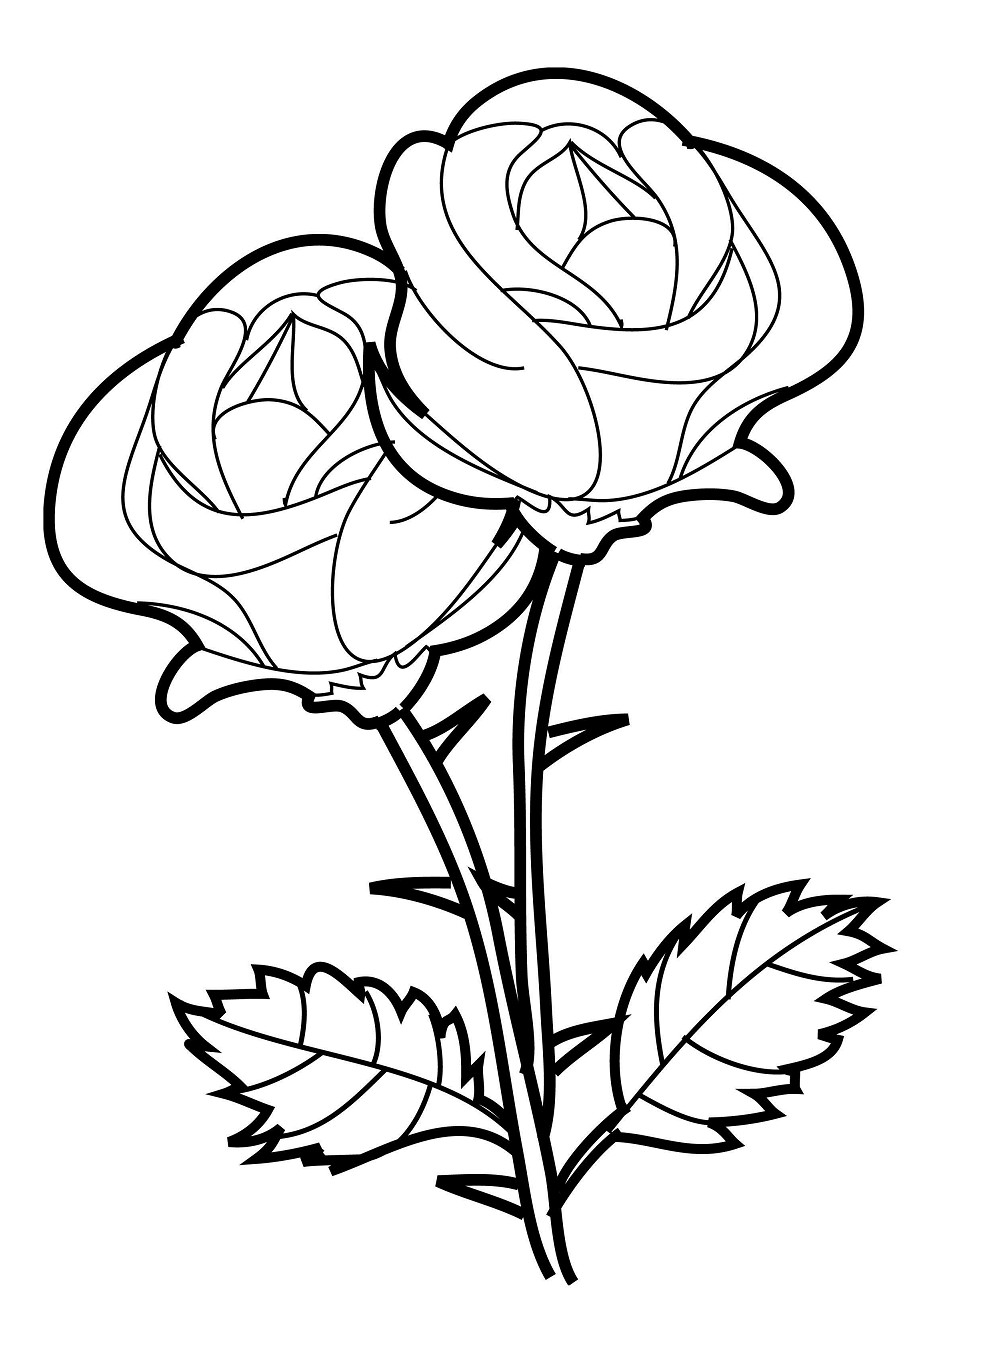 Gambar Mewarnai Bunga Mawar Terbaru | gambarcoloring